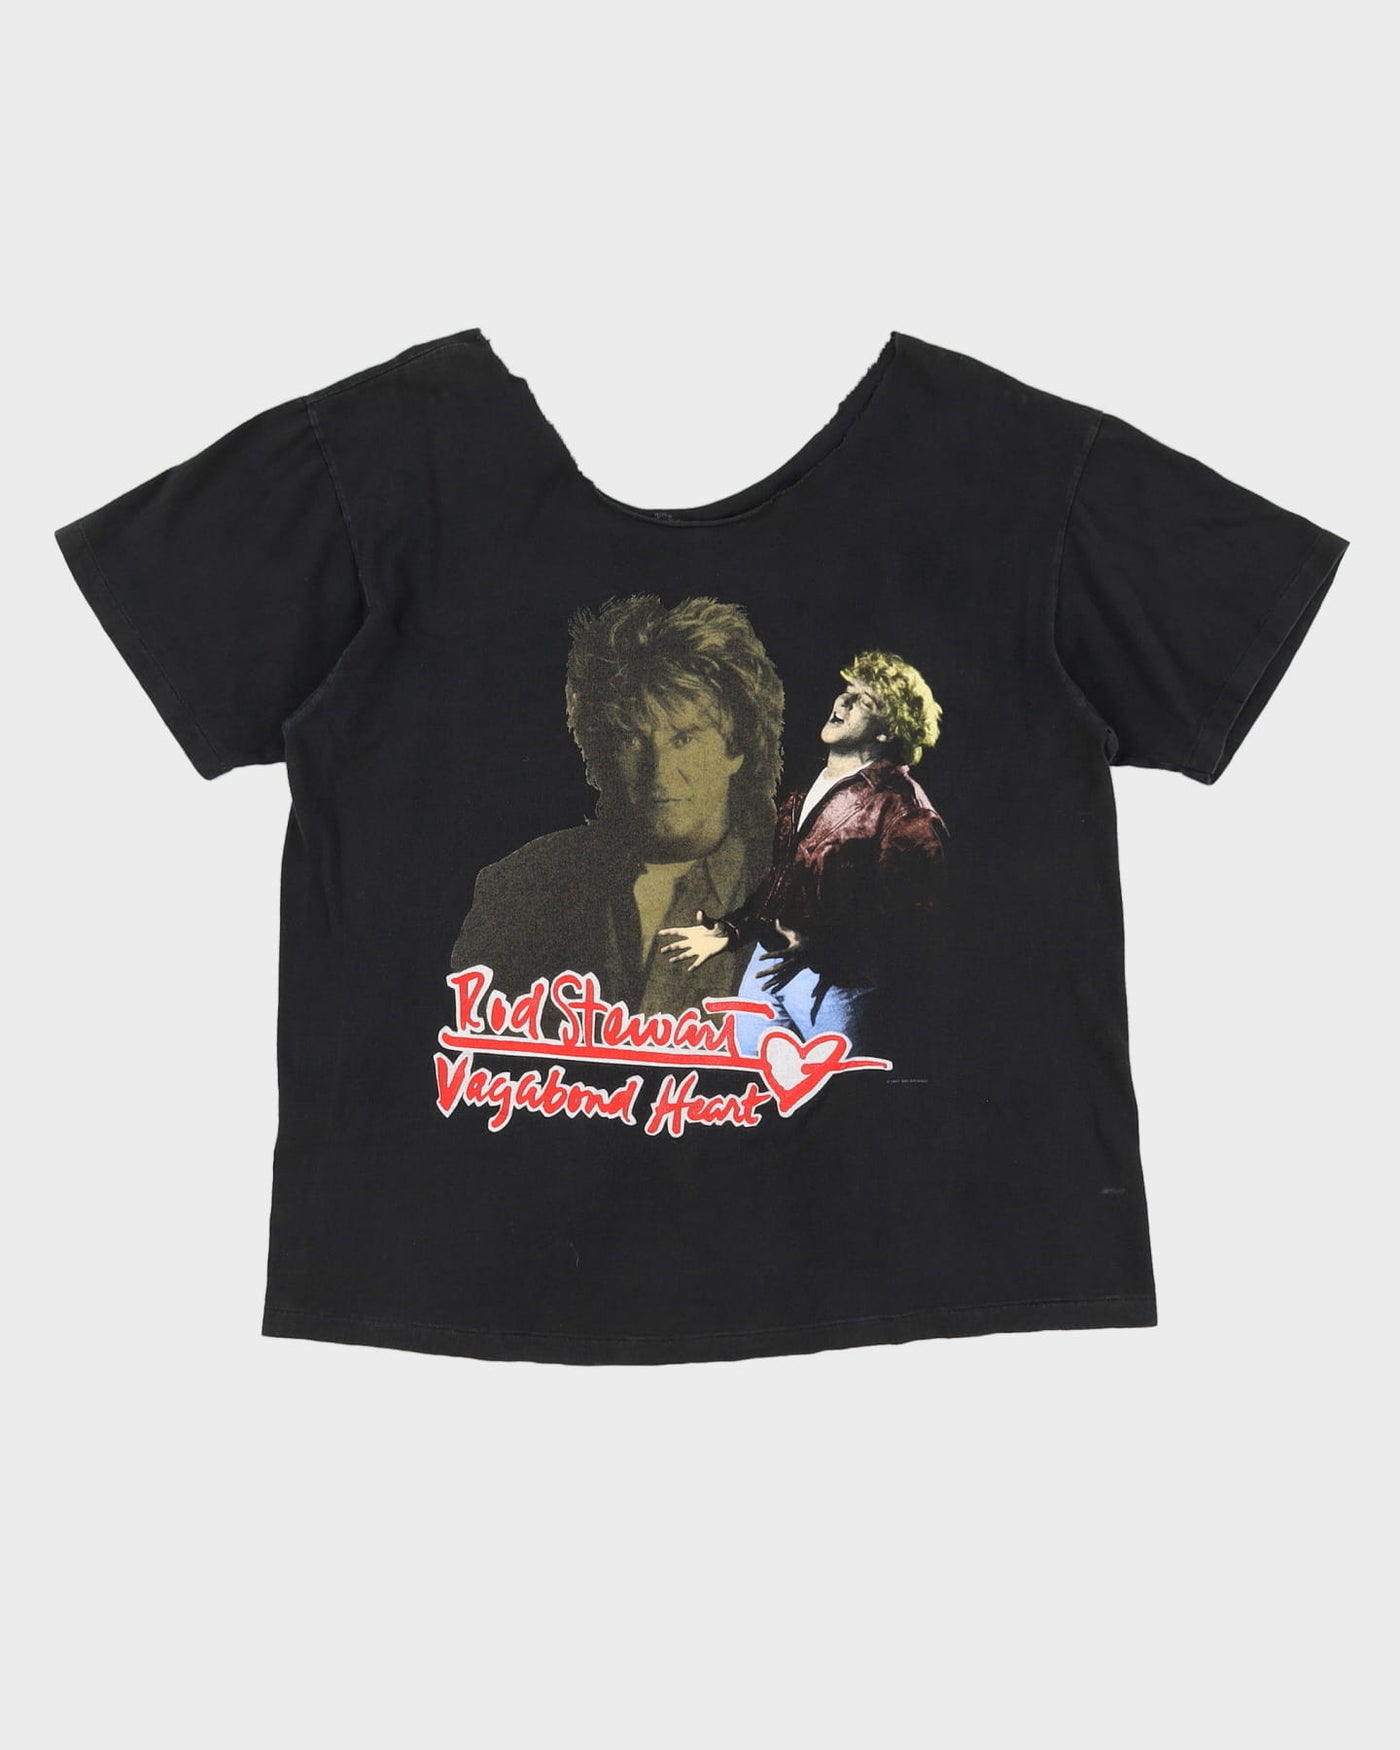 Vintage 1991 Rod Stewart Vagabond Heart Collarless / Off The Shoulder Black Graphic Band T-Shirt - XL / XXL